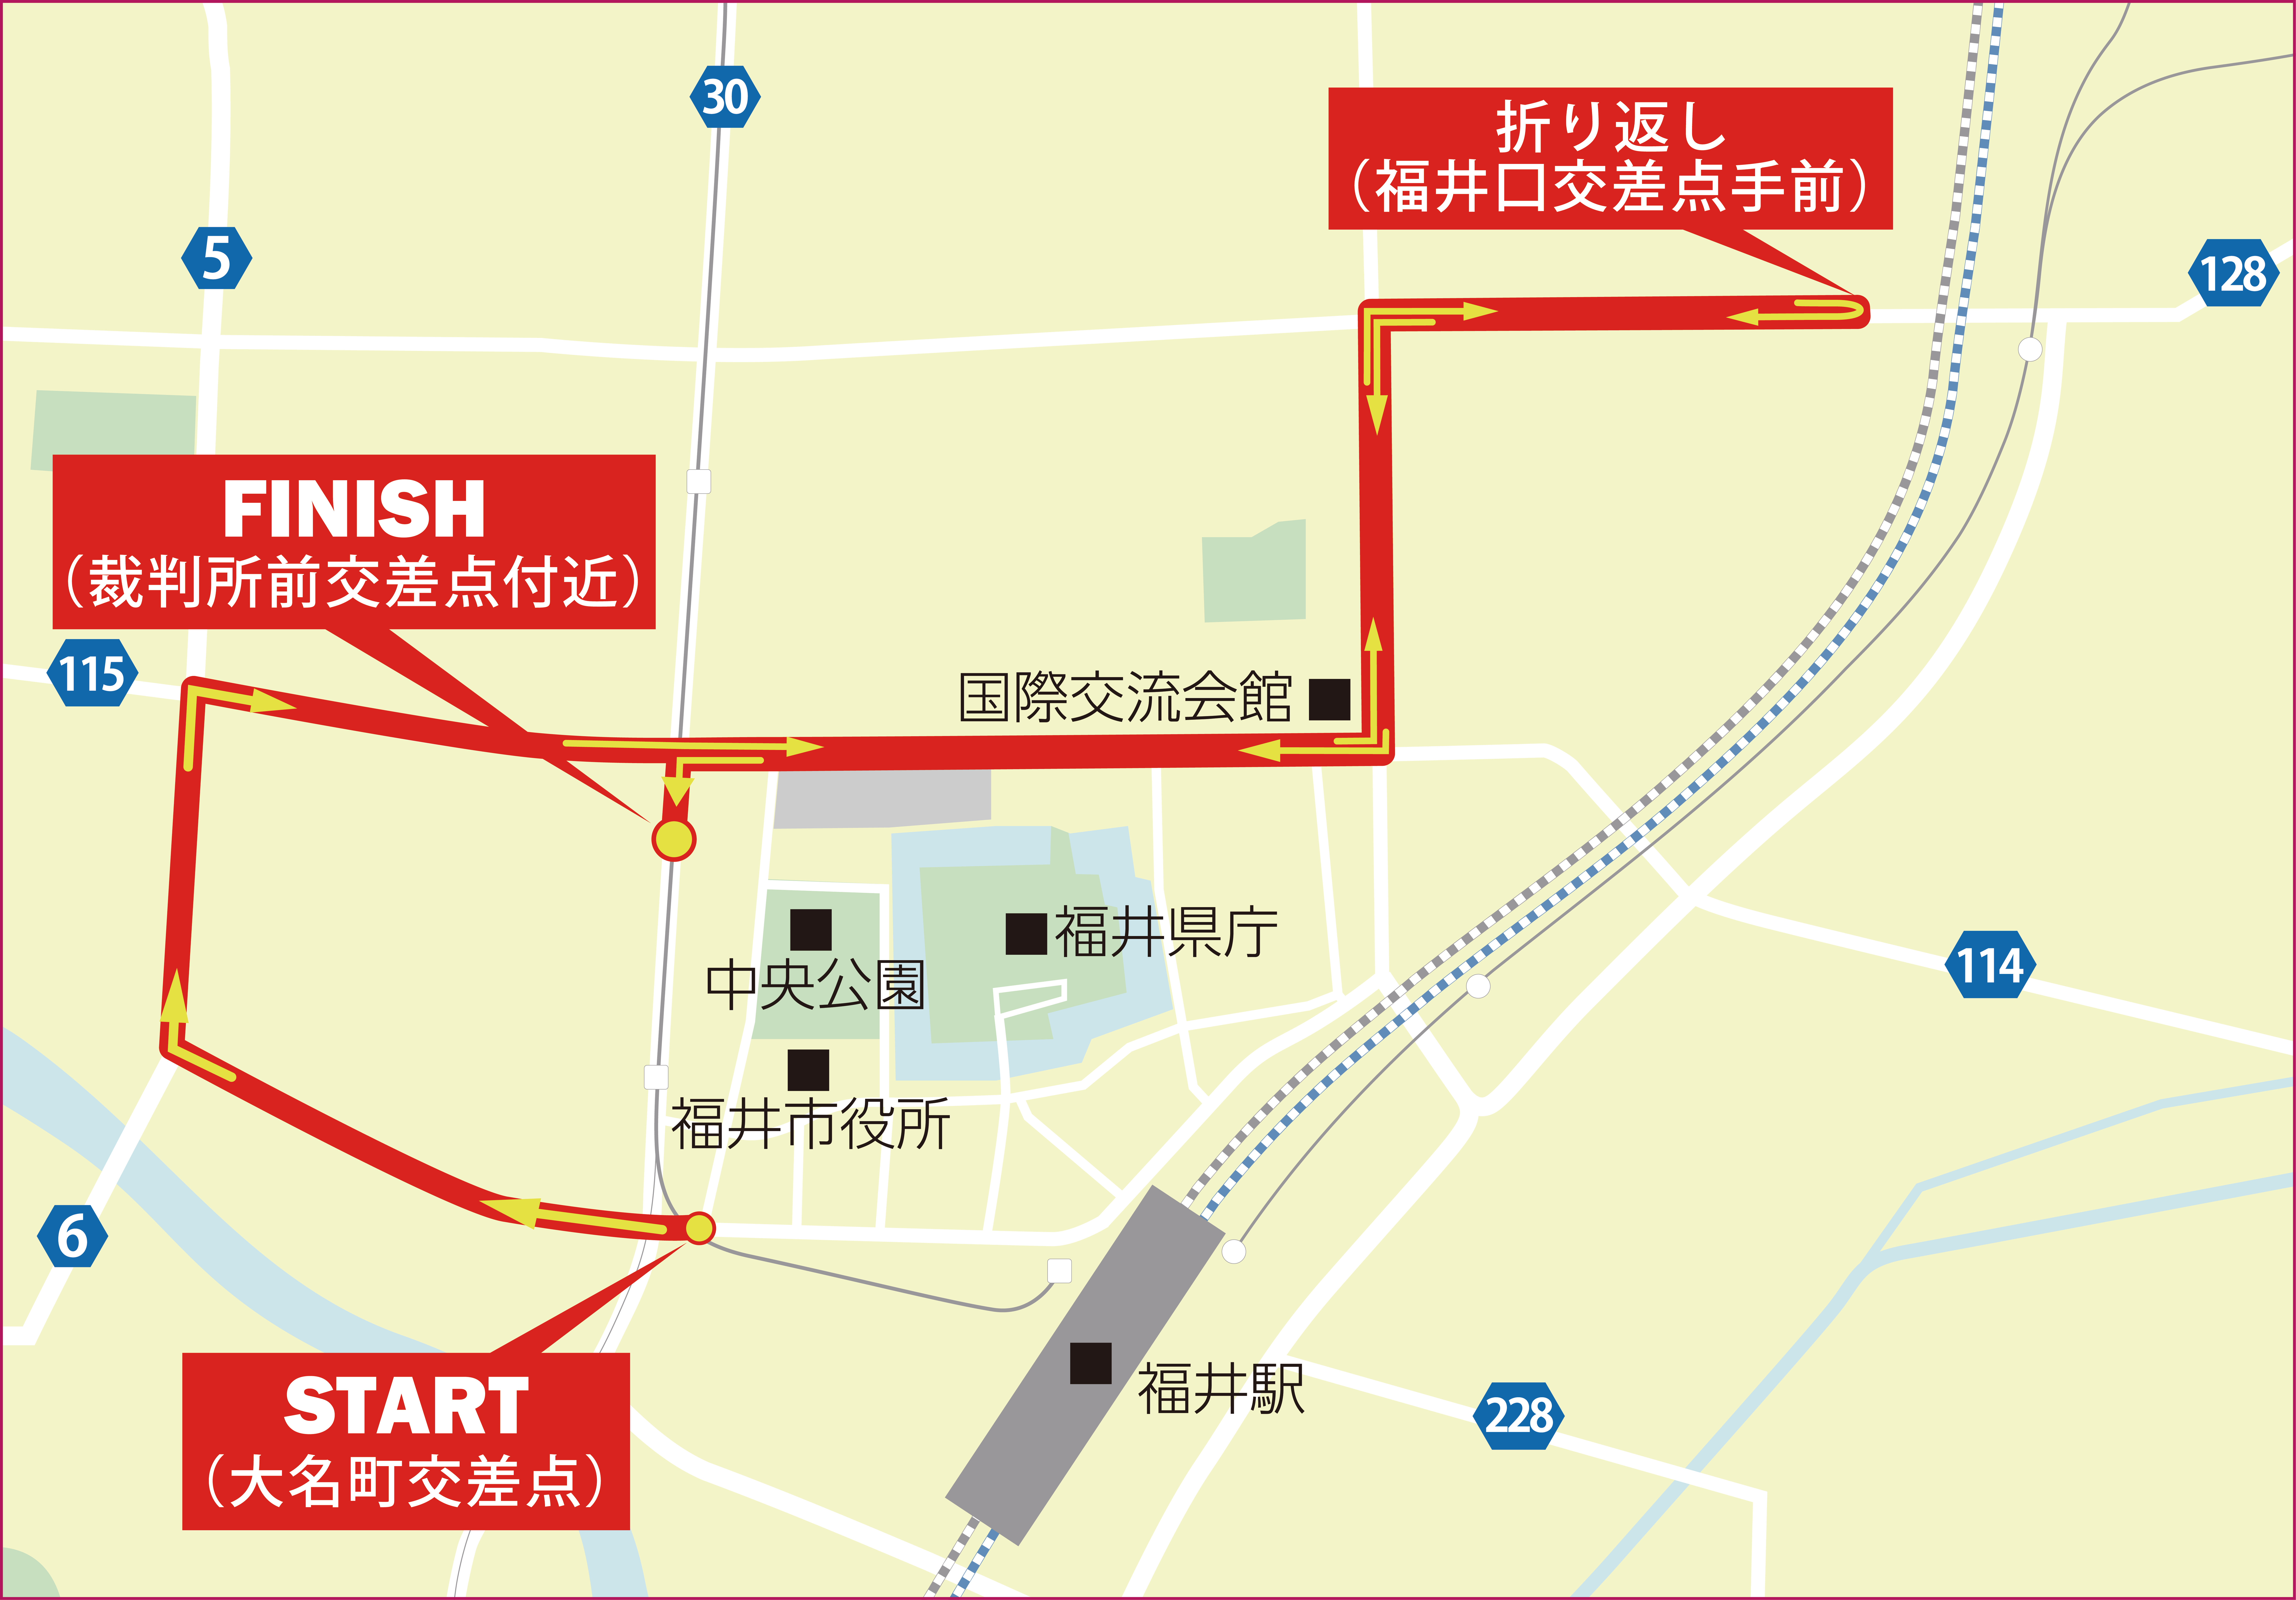 The Fst トップアスリートチャレンジマラソンコース図